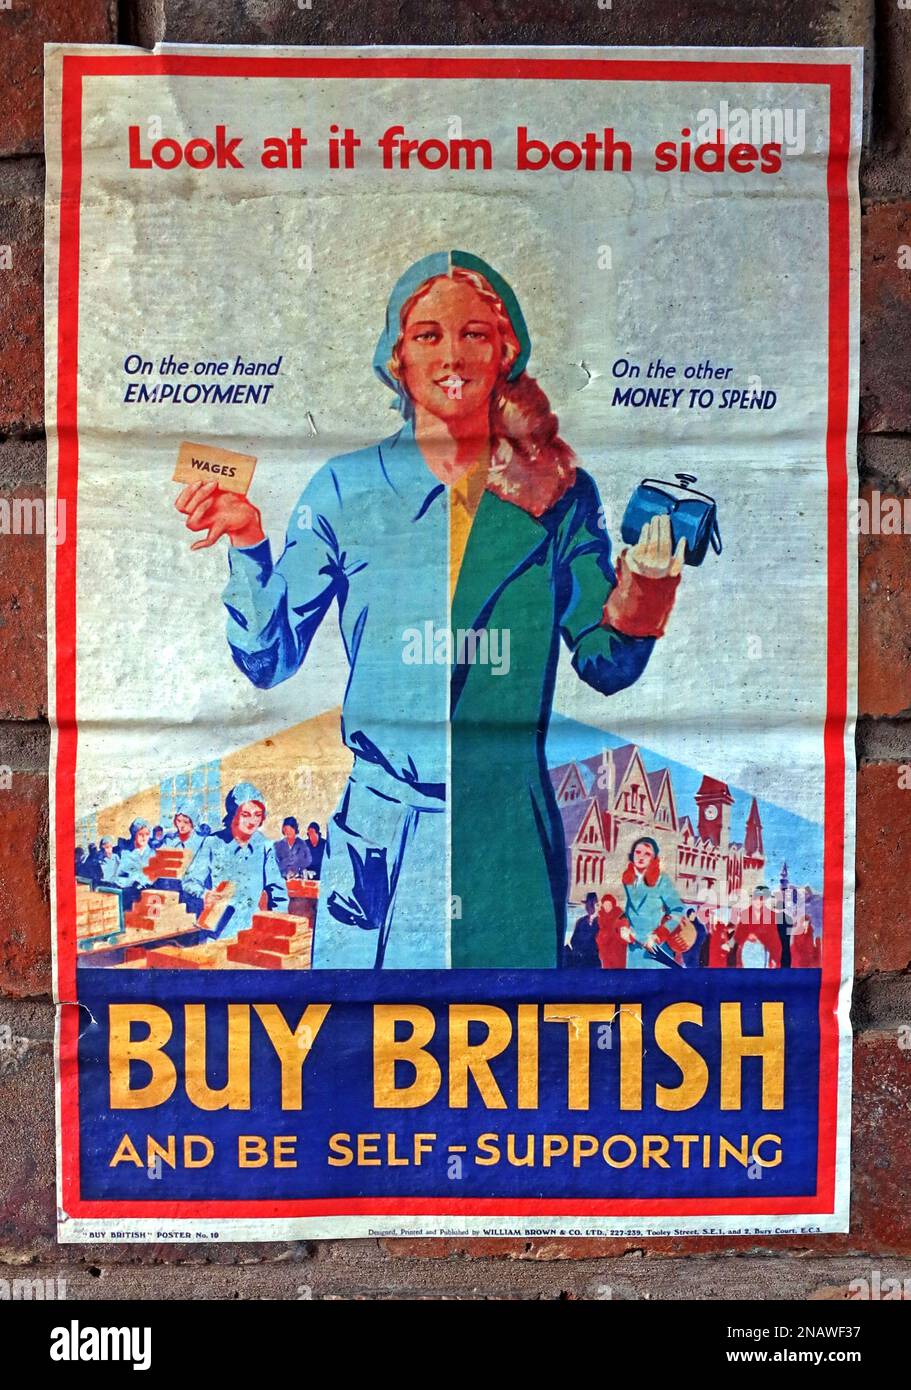 Poster - Buy British, e di essere auto-sostegno, guardare da entrambe le parti, occupazione, denaro da spendere Foto Stock